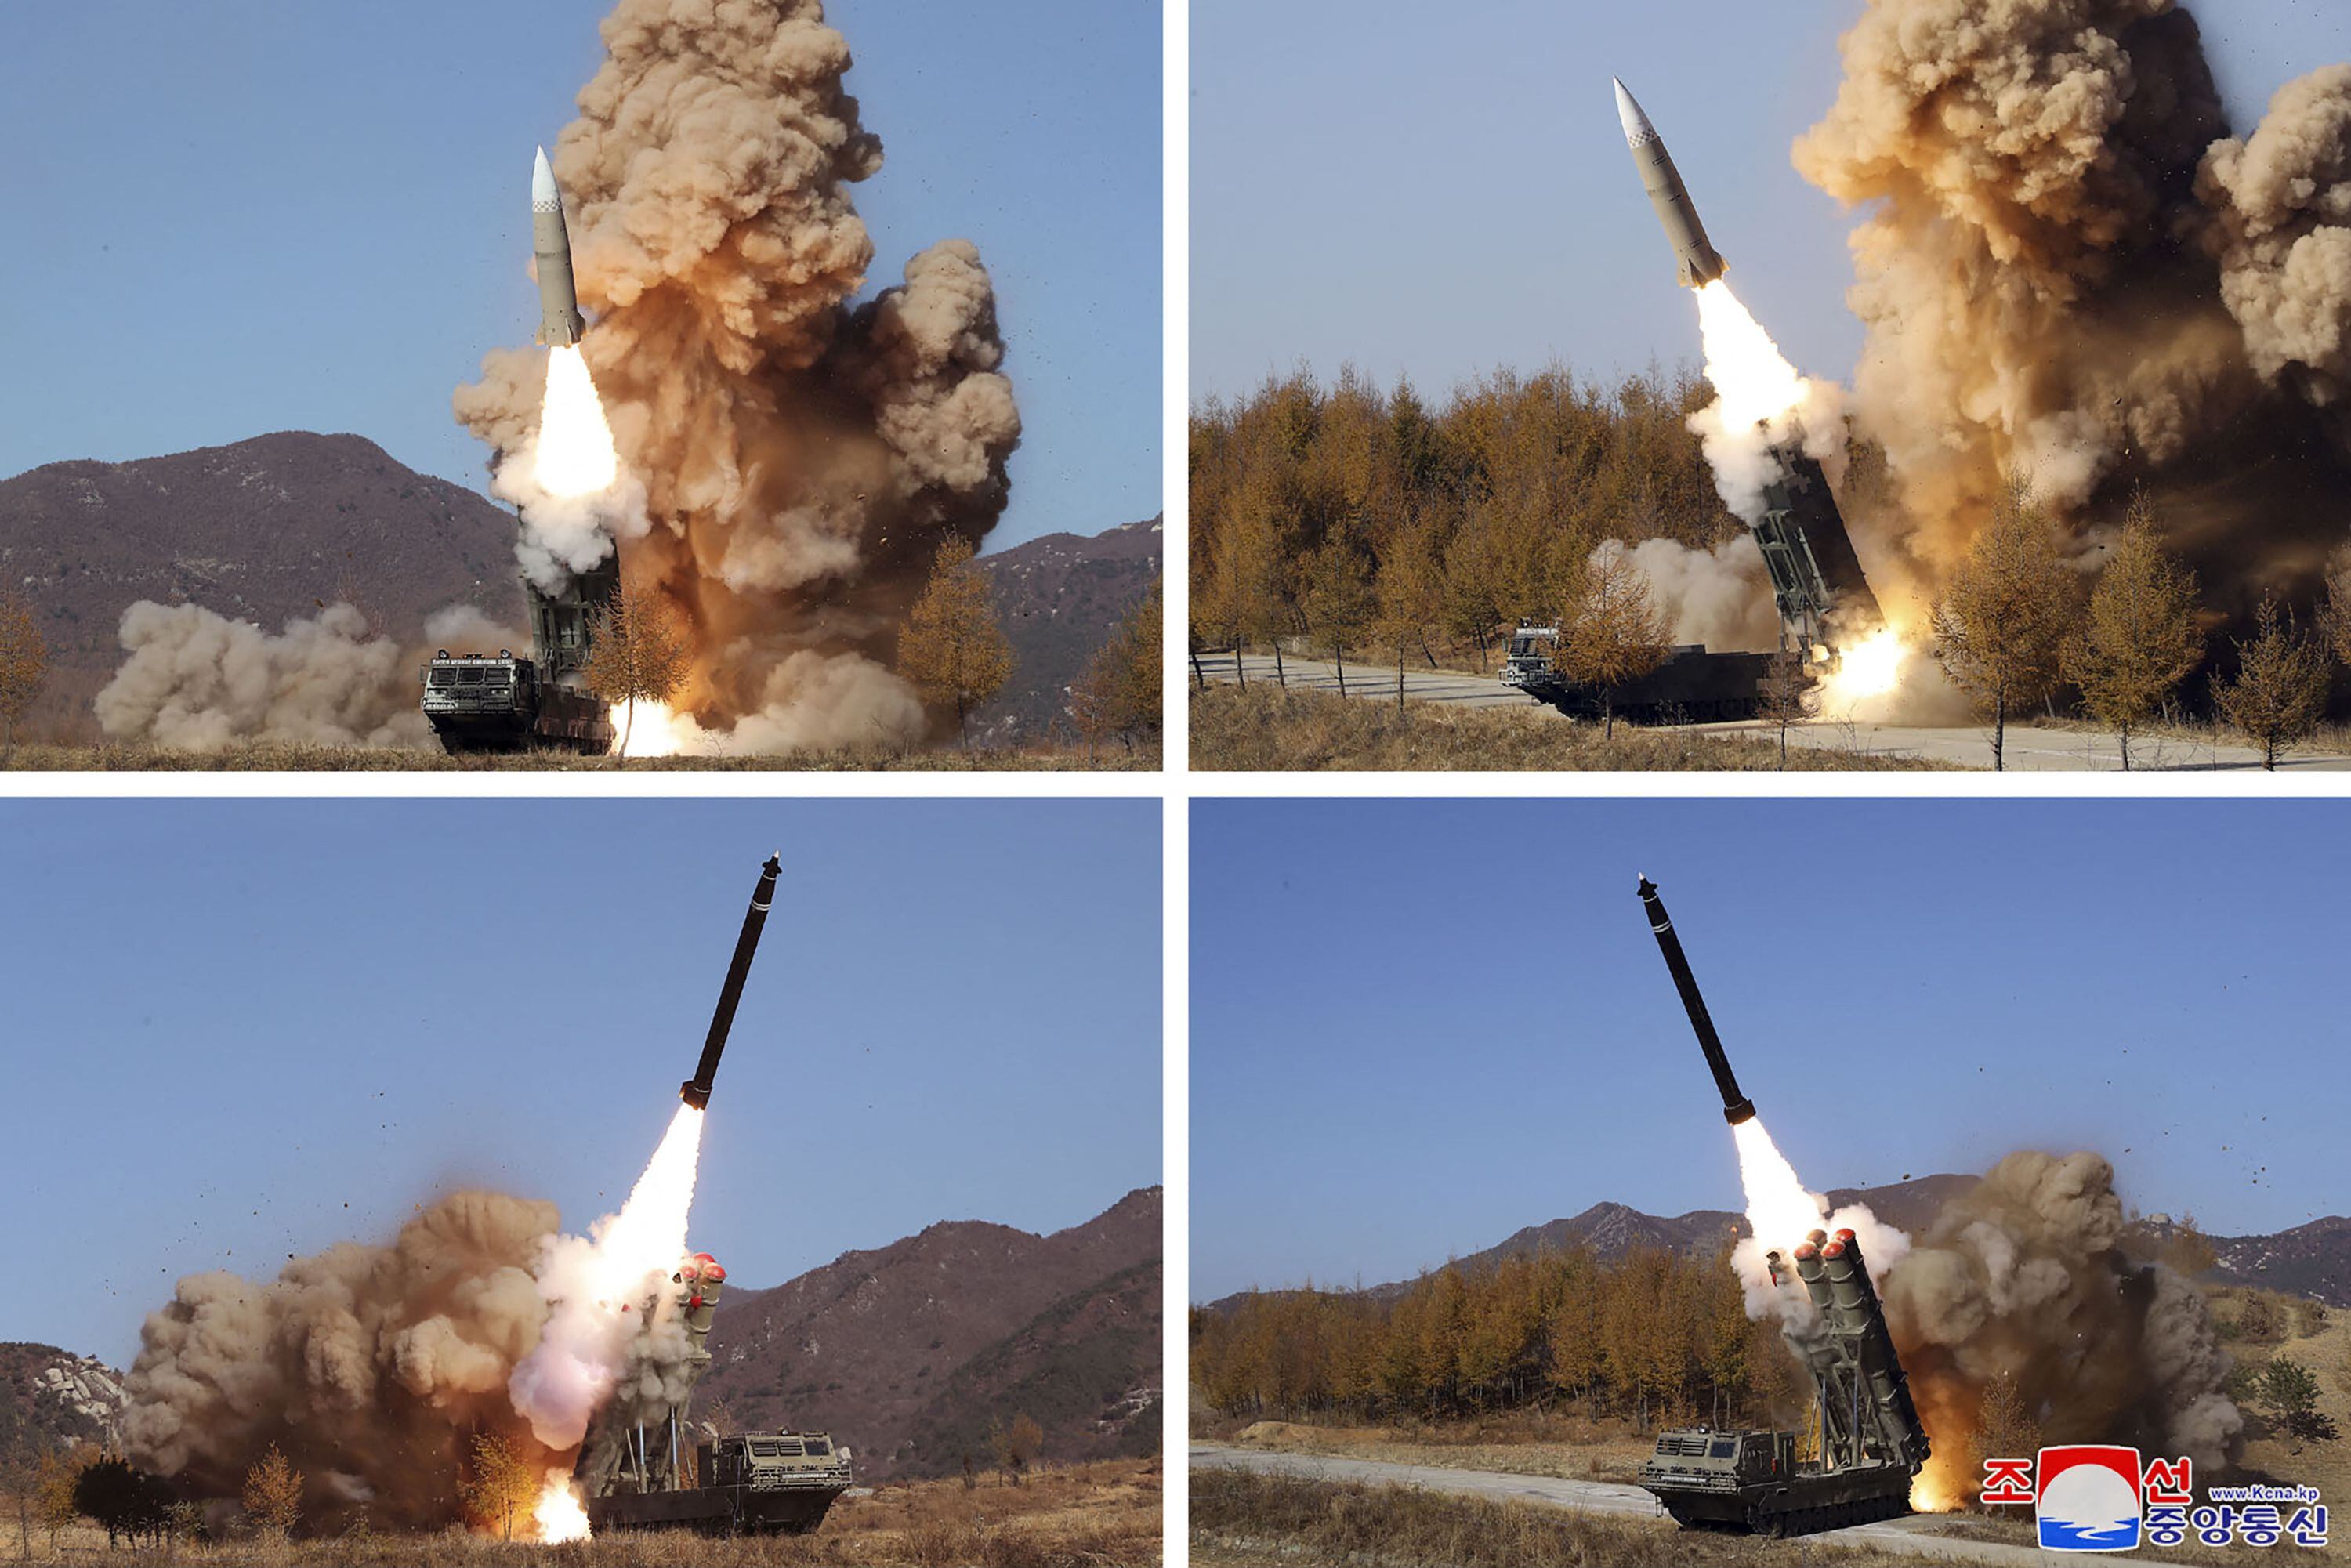 Corea del Norte enfrenta duras sanciones por su programa de armas nucleares y misiles, lo que le dificulta encontrar los recursos para construir y mantener fuerzas convencionales modernas. 